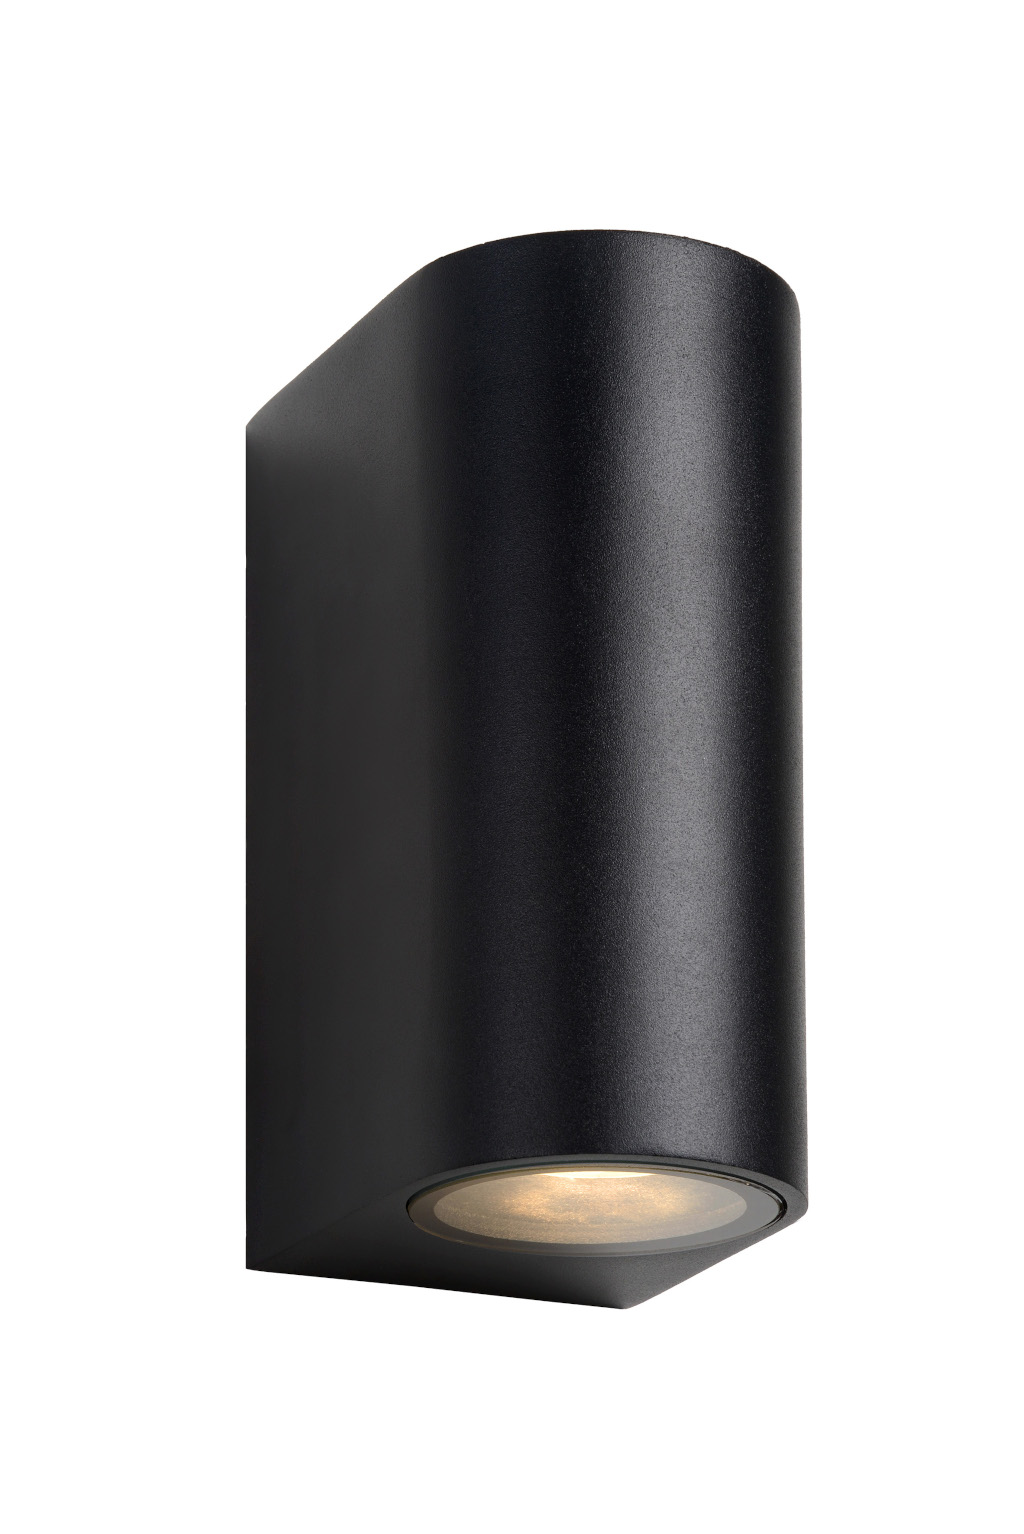 Kinkiet Zora-LED 22861/10/30 2xGU10 czarny